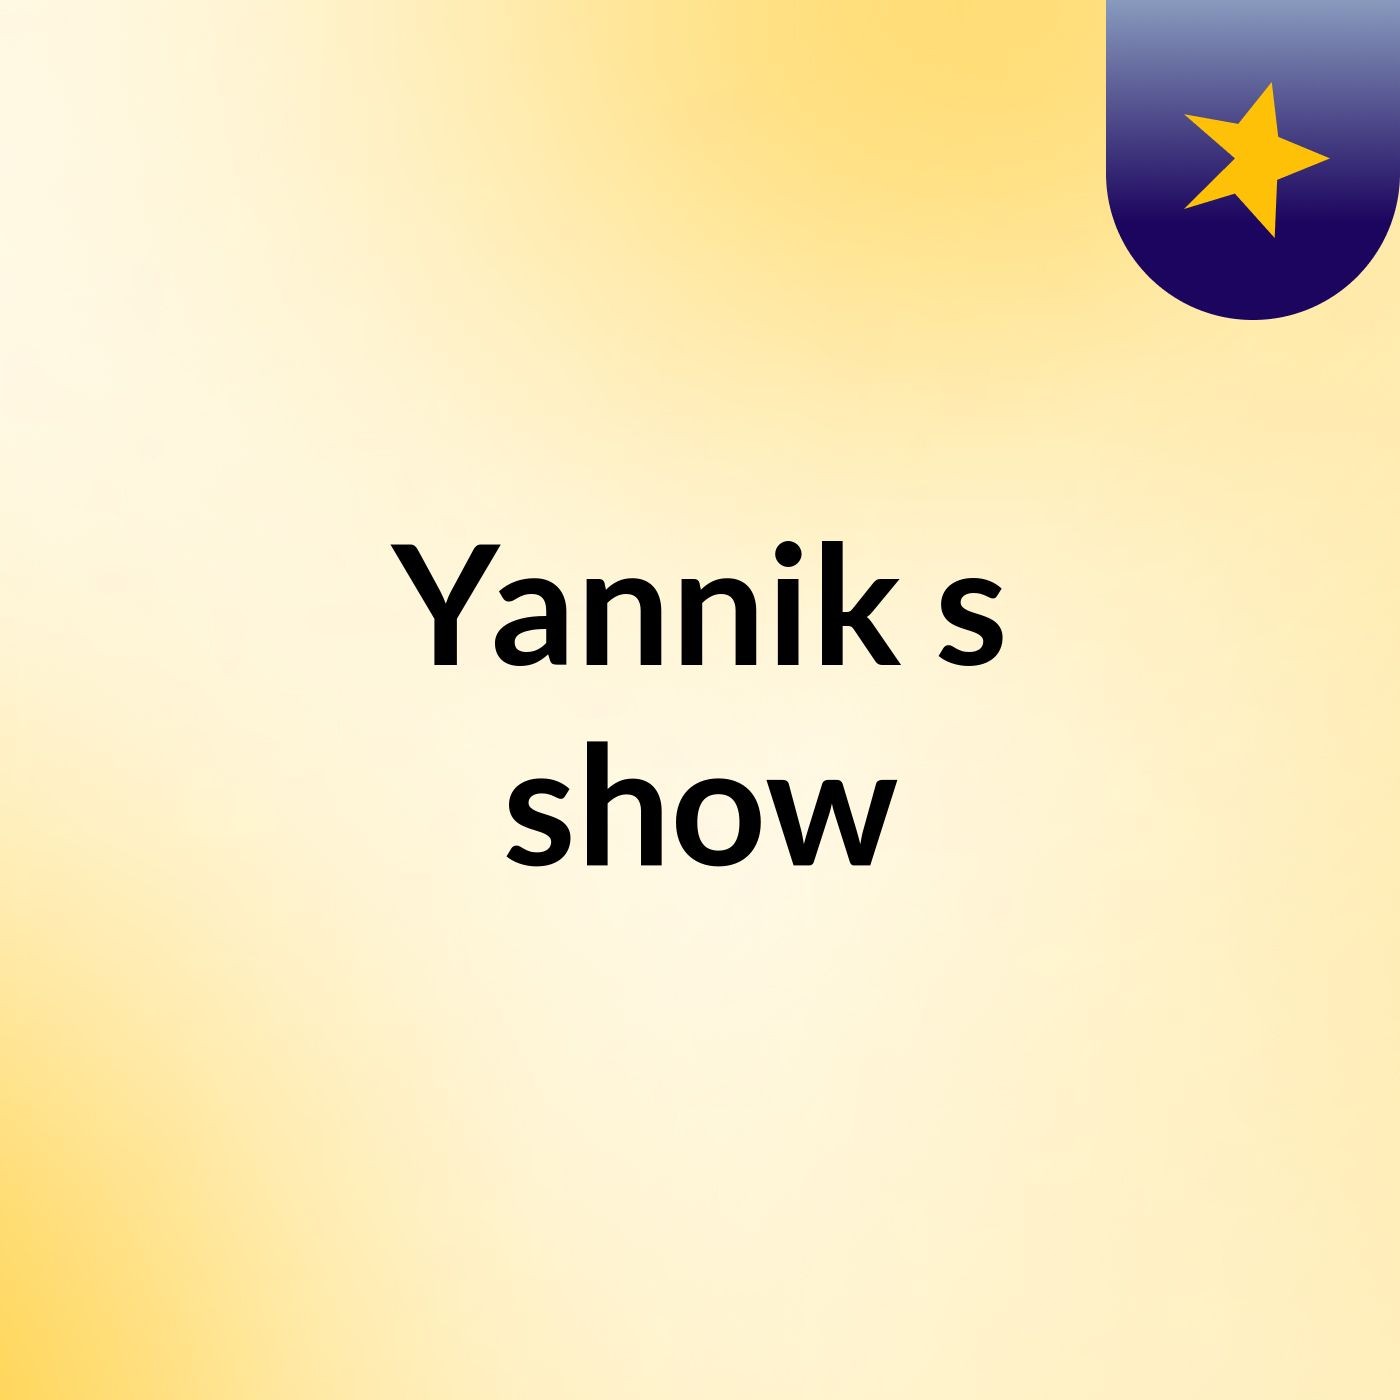 Yannik's show